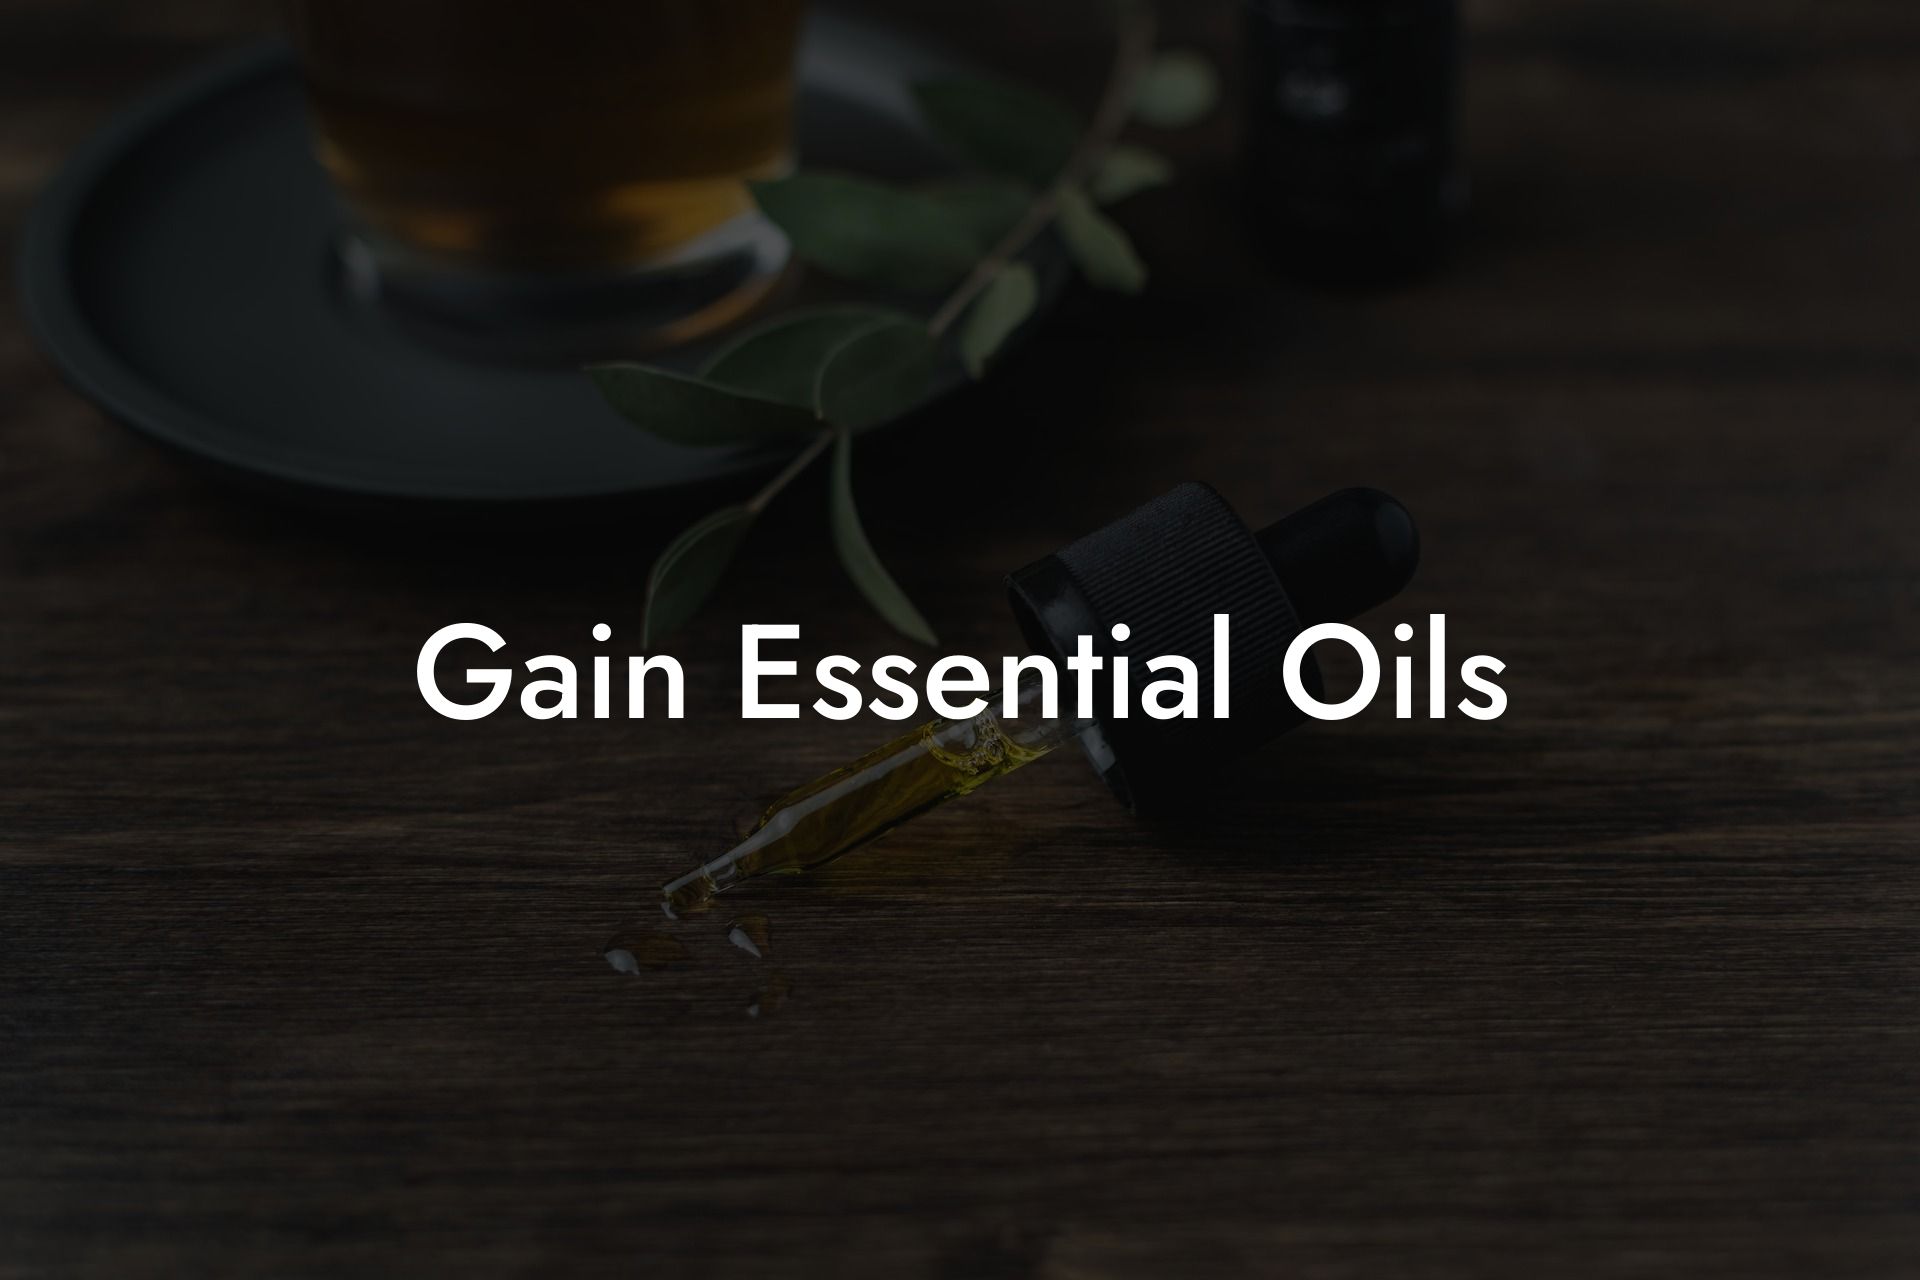 Gain Essential Oils